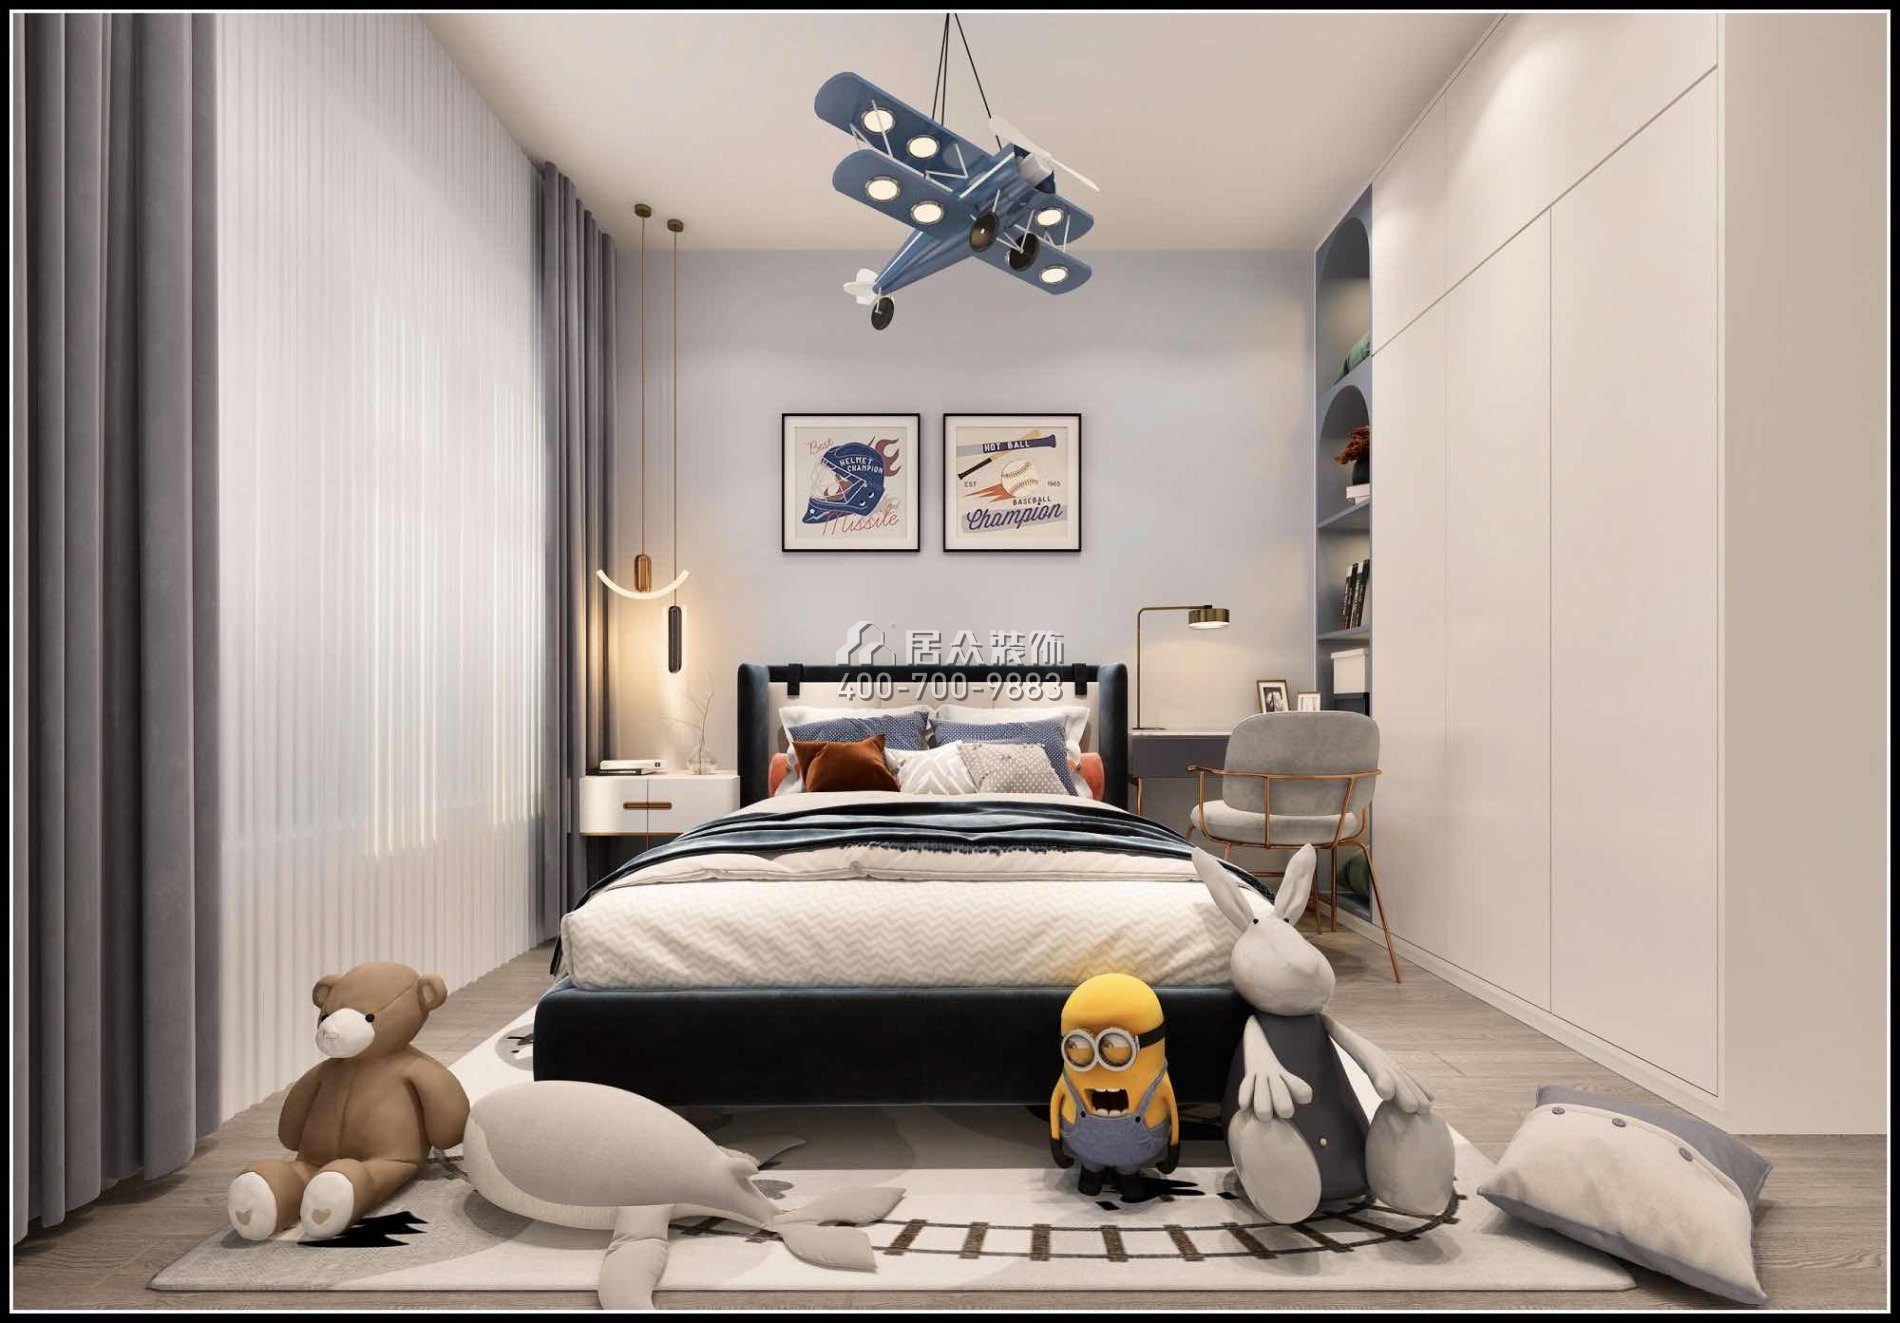 金鸿利嘉阁320平方米中式风格复式户型卧室kok电竞平台效果图